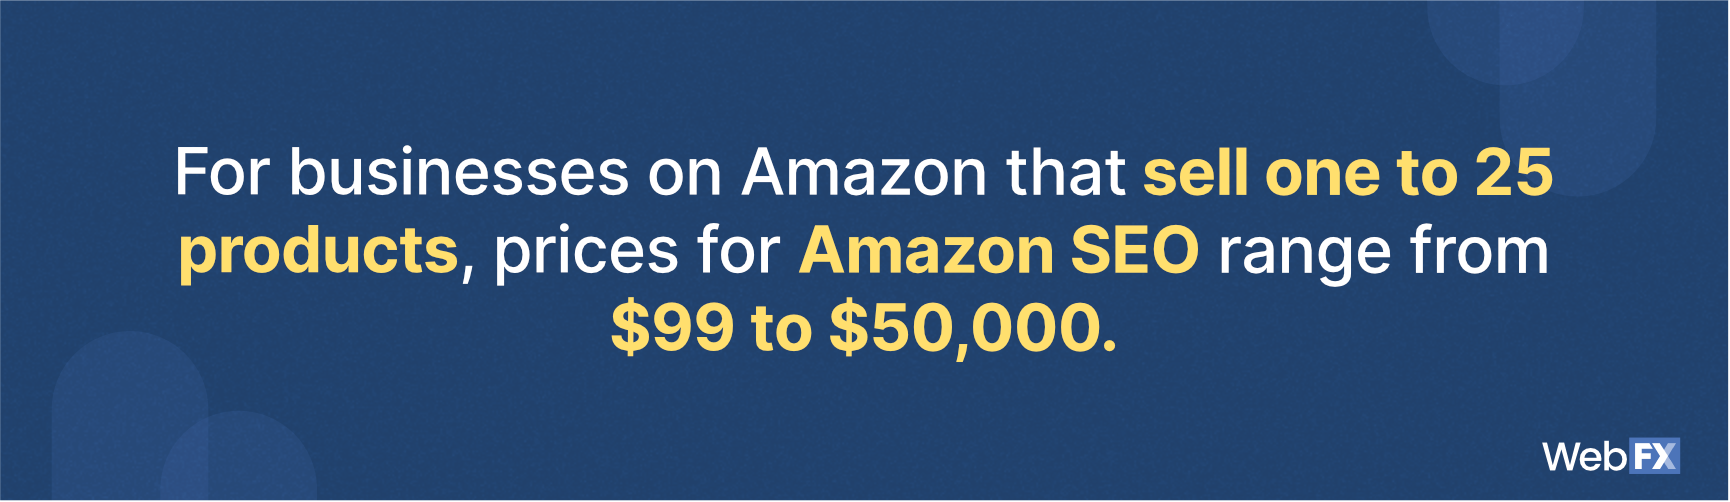 亚马逊搜索引擎优化定价的企业出售1到25个产品